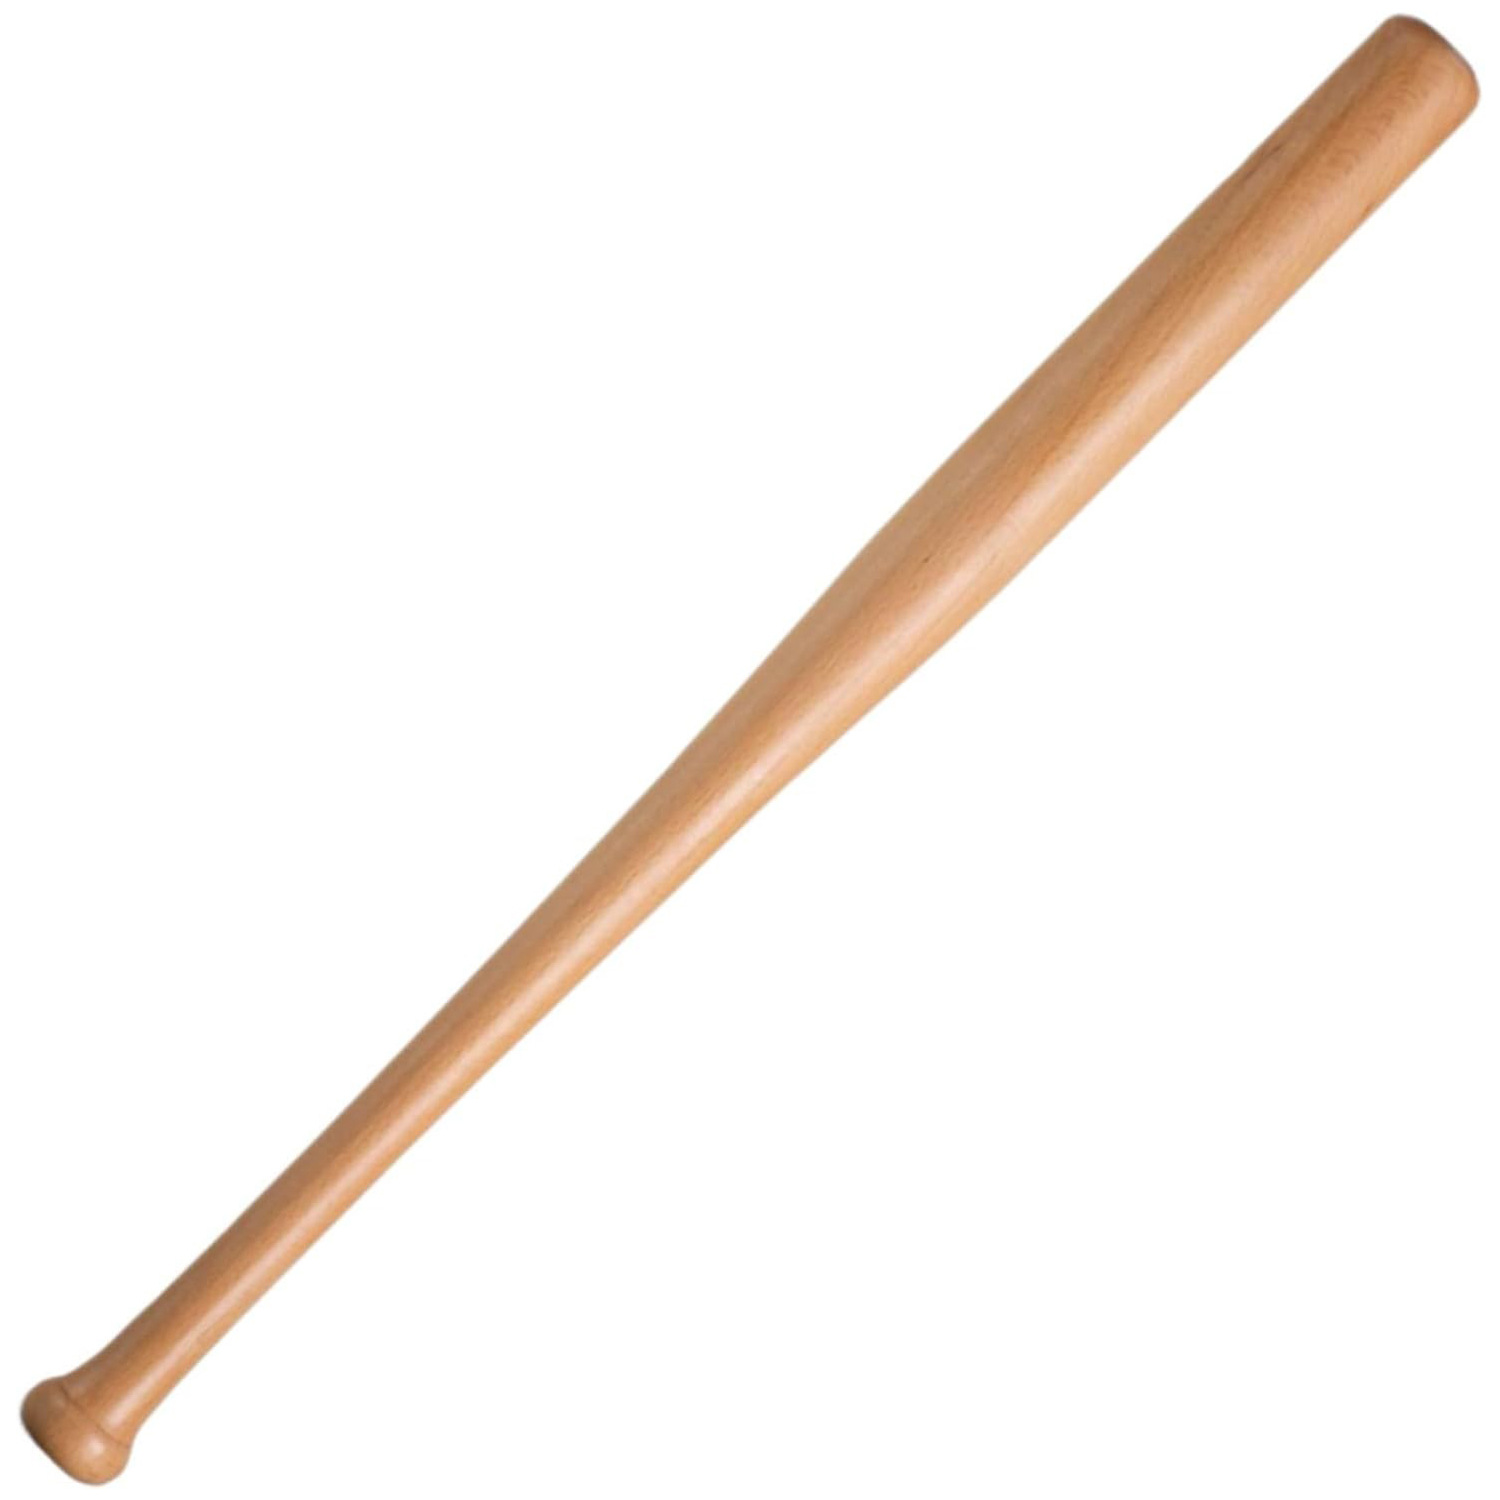 木棒球棒原木实心木棒球棍车载防身加厚硬木武器学校垒球棒球杆